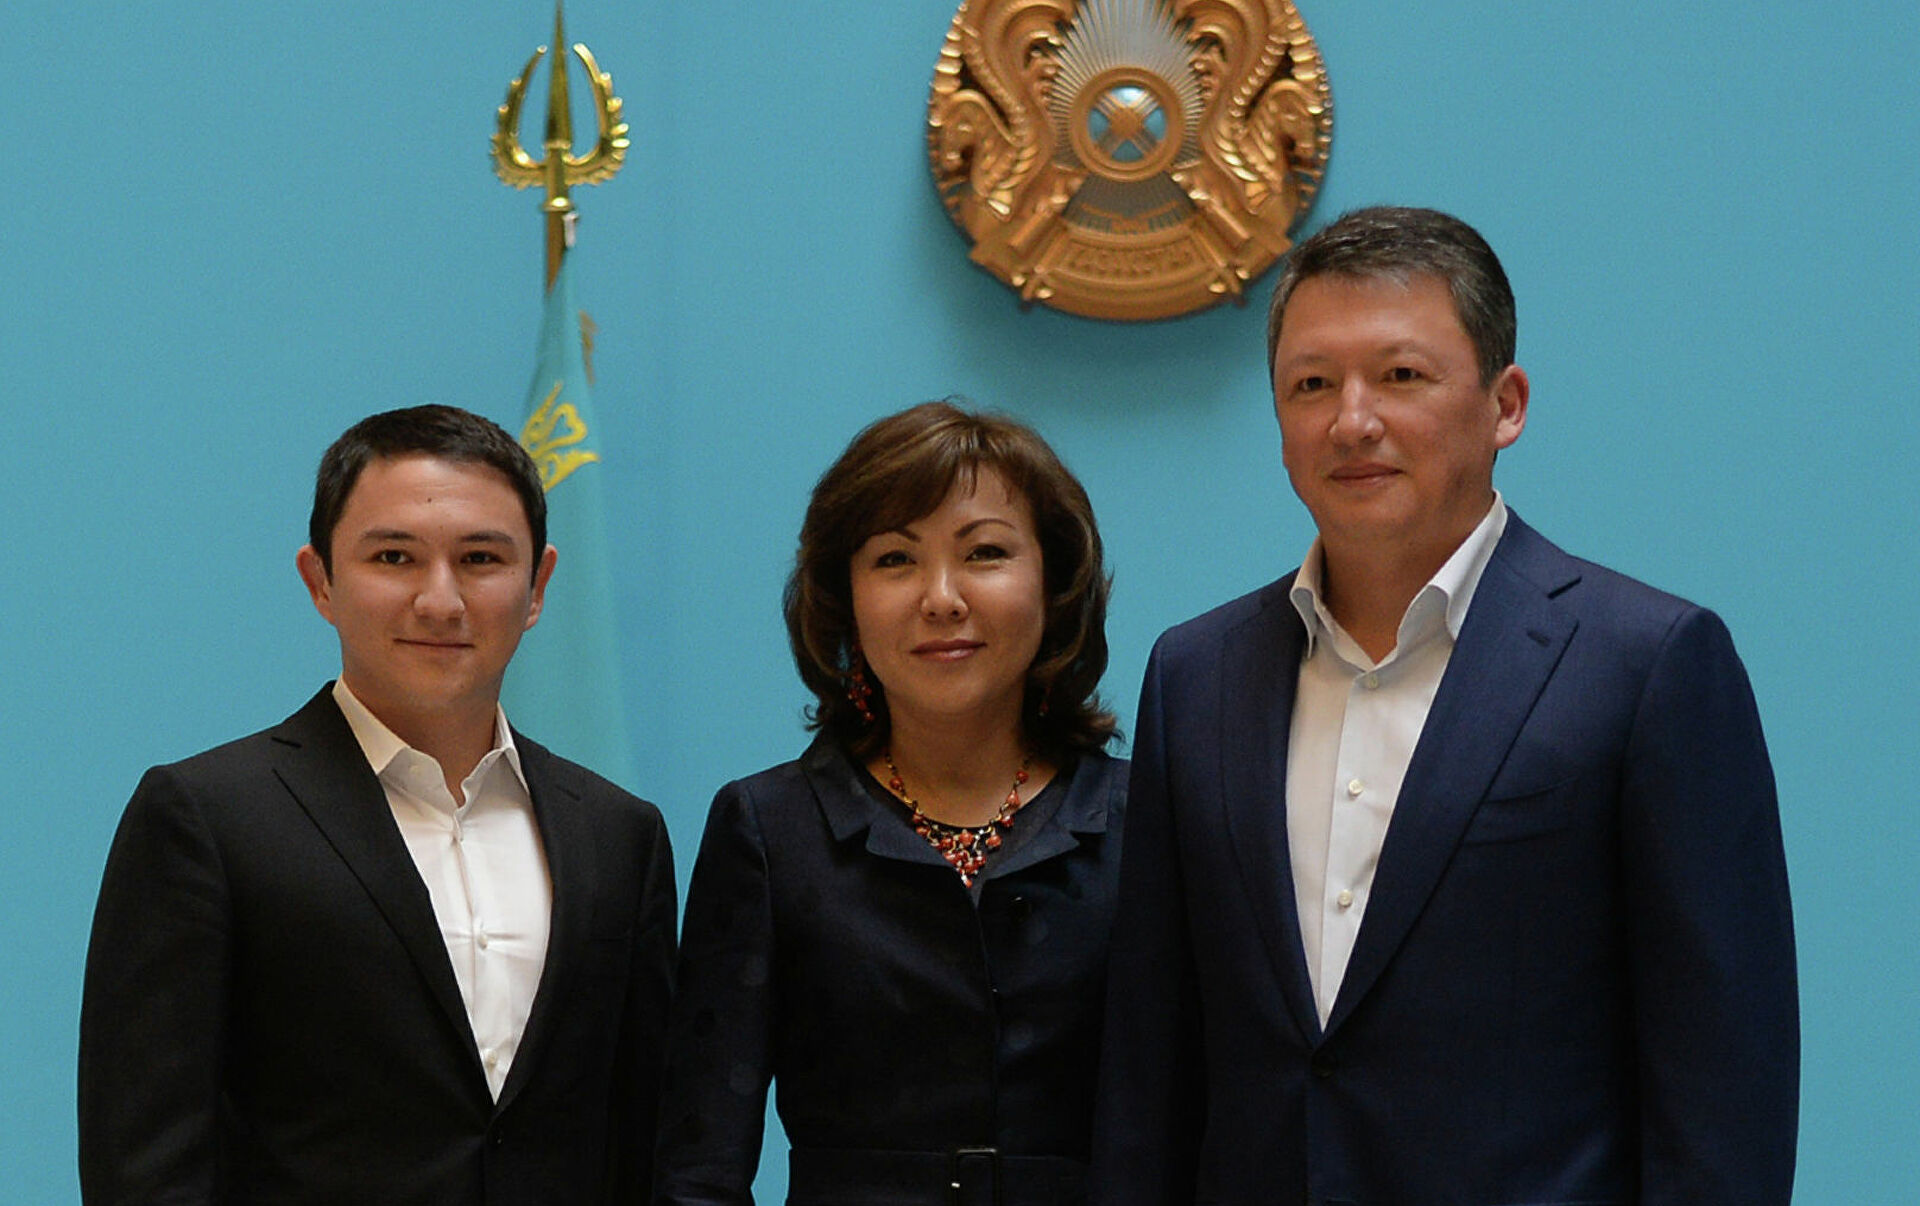 Пять казахстанцев попали в обновленный рейтинг богатейших людей мира